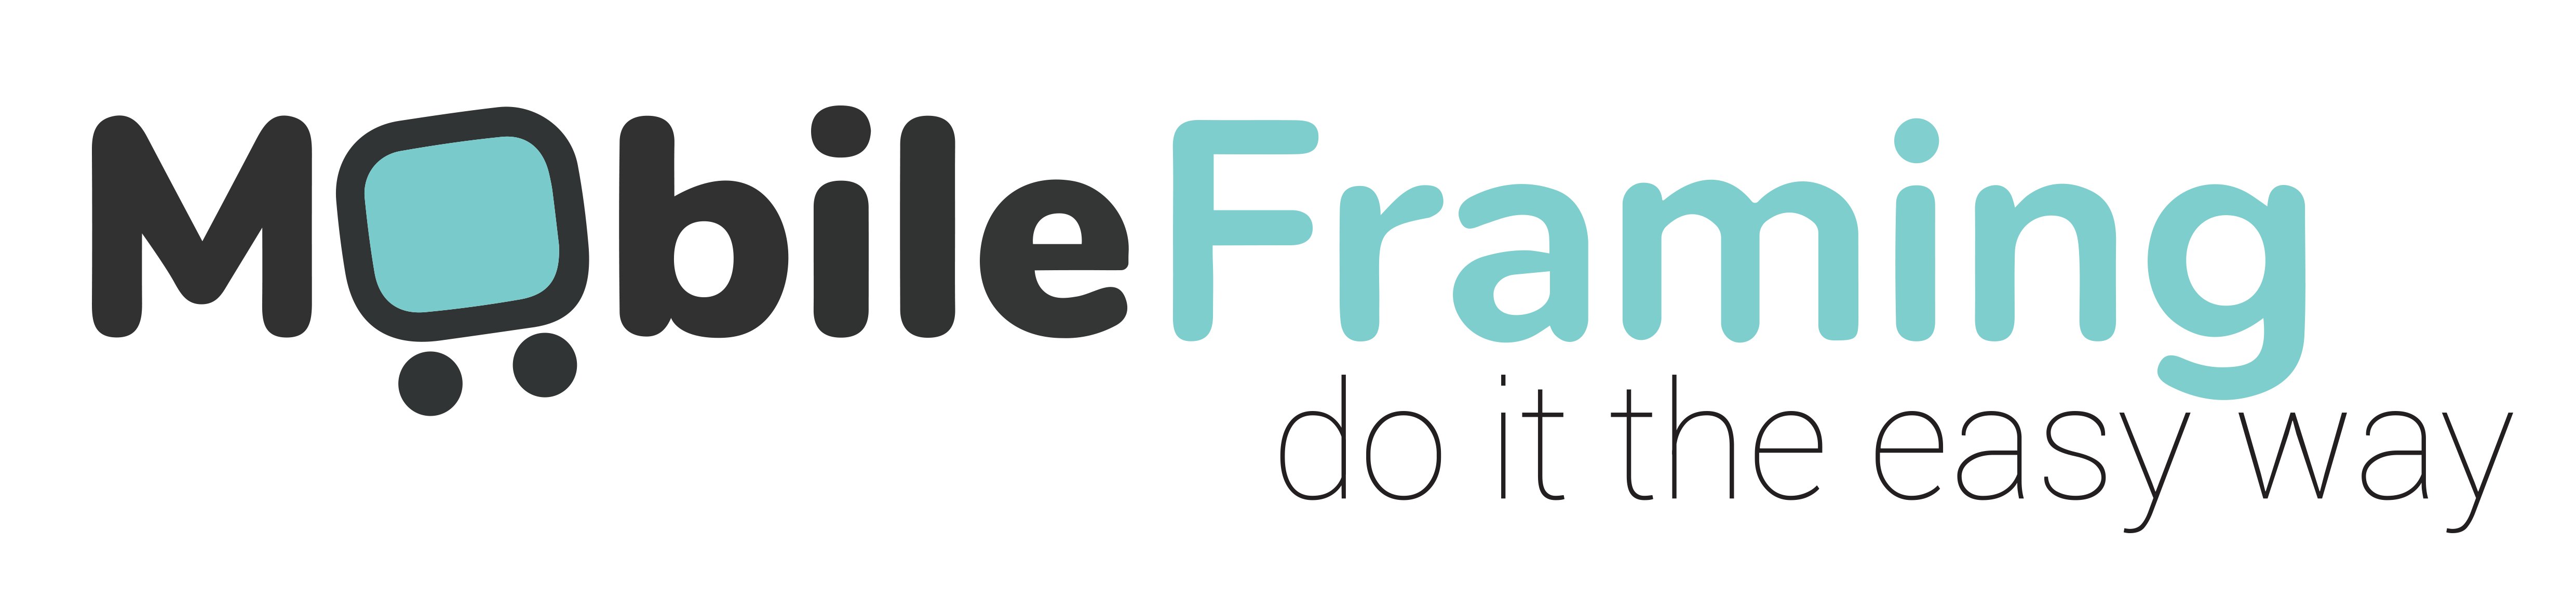 Mobile Framing Logo